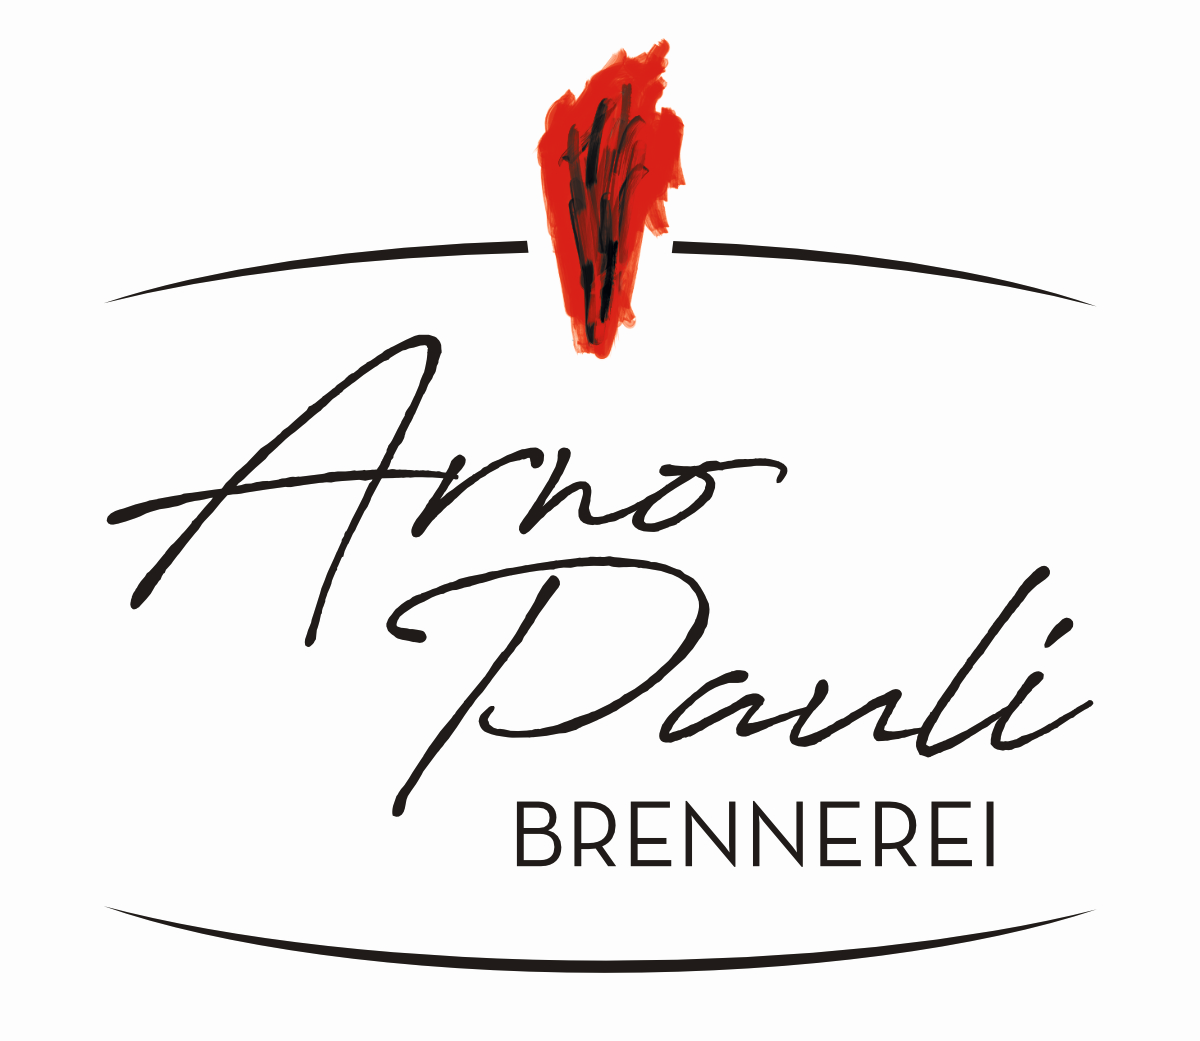 Brennerei Arno Pauli